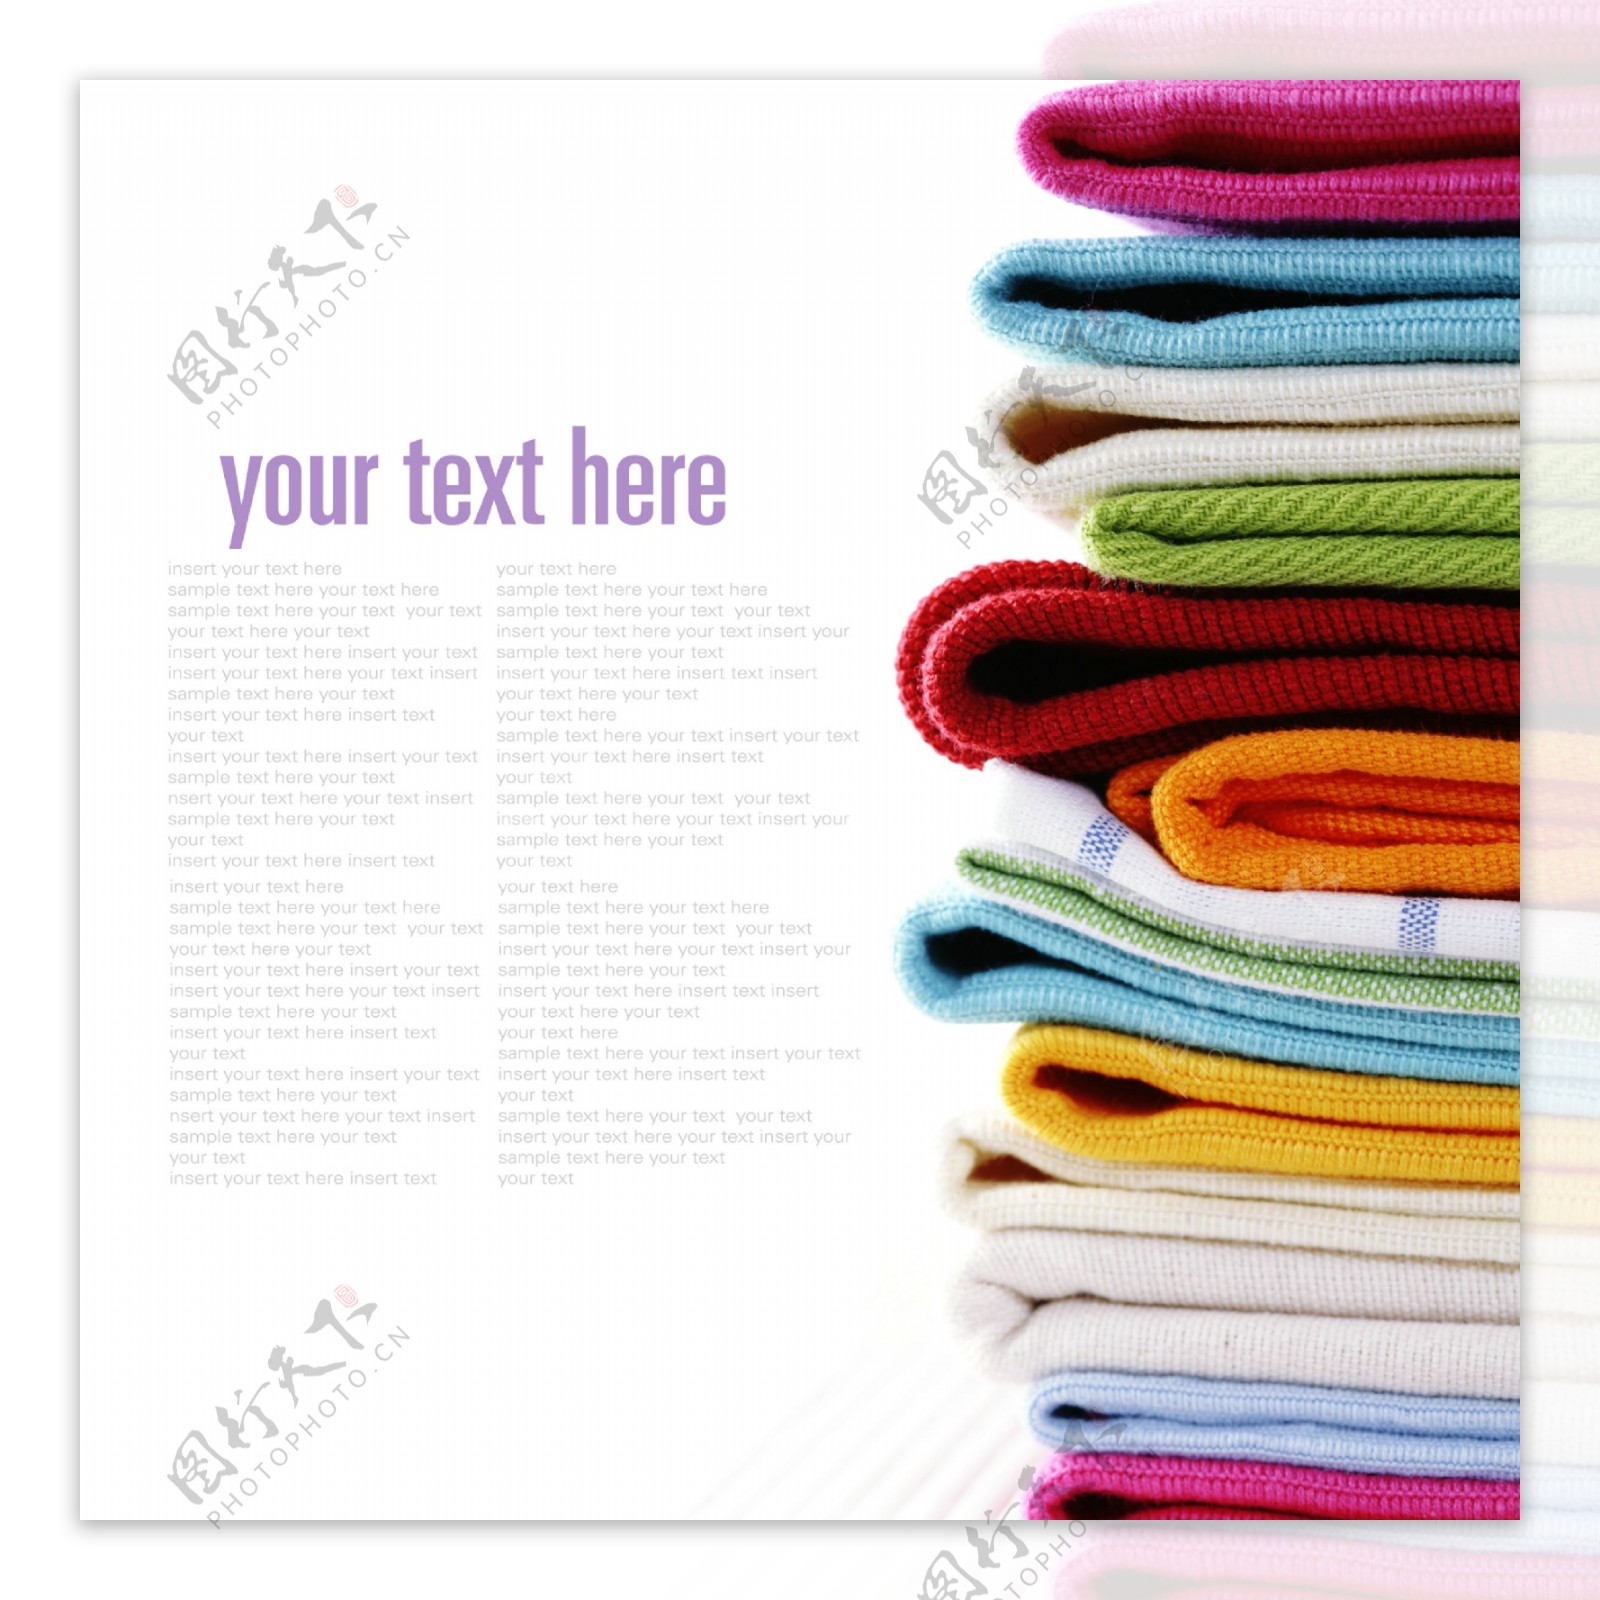 彩色毛巾主题图片